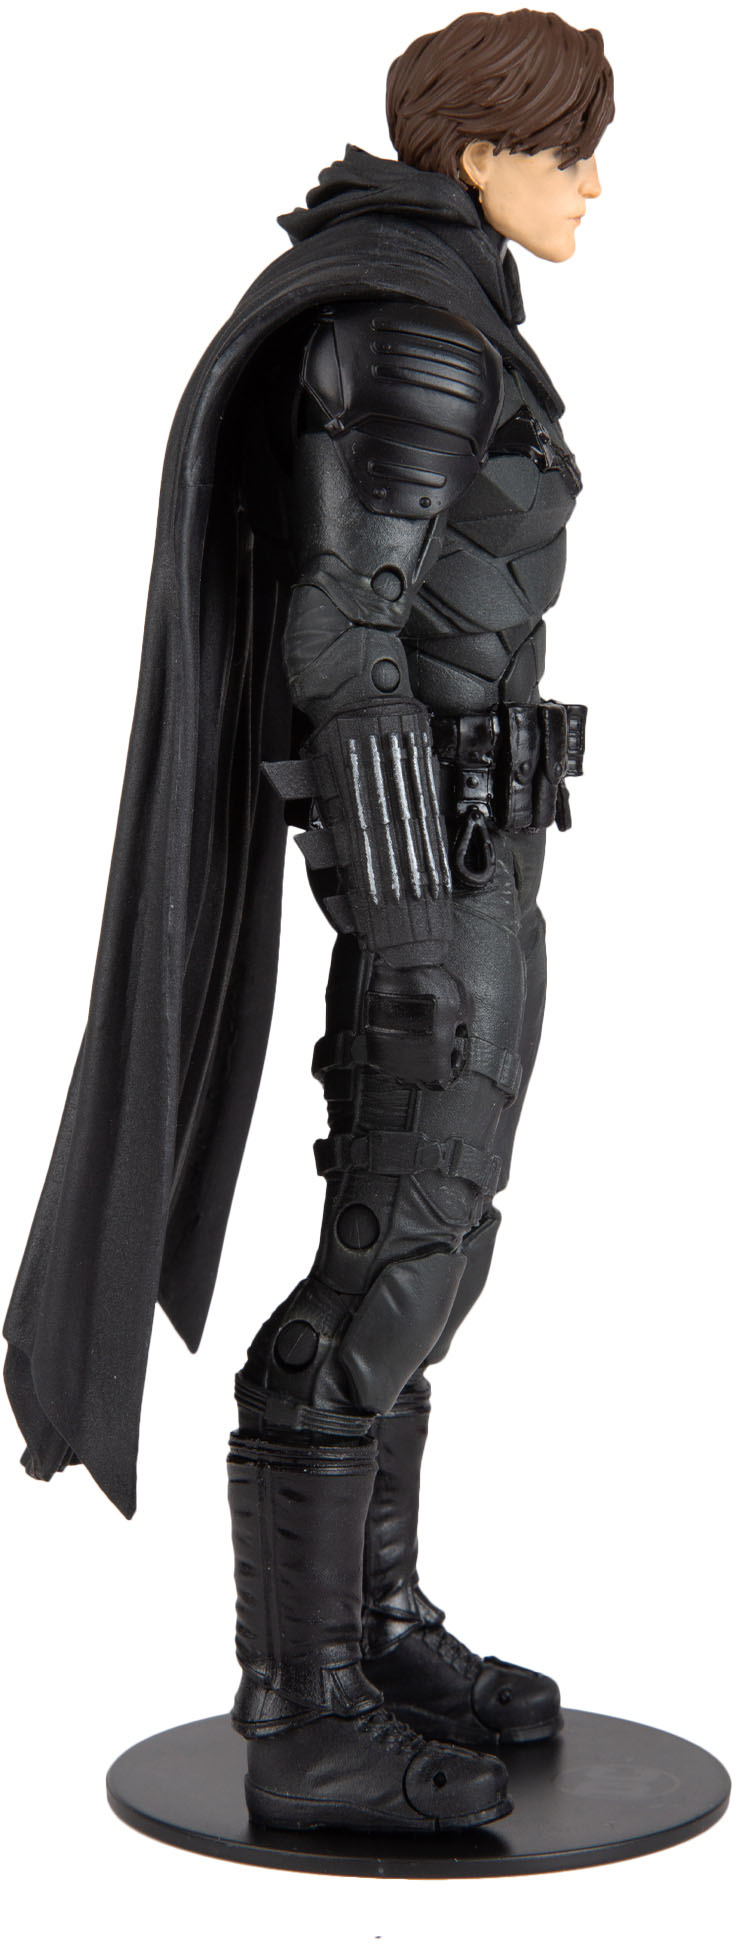 The Batman DC Multiverse Action Figure Batman Unmasked 18 cm McFarlane Toys 